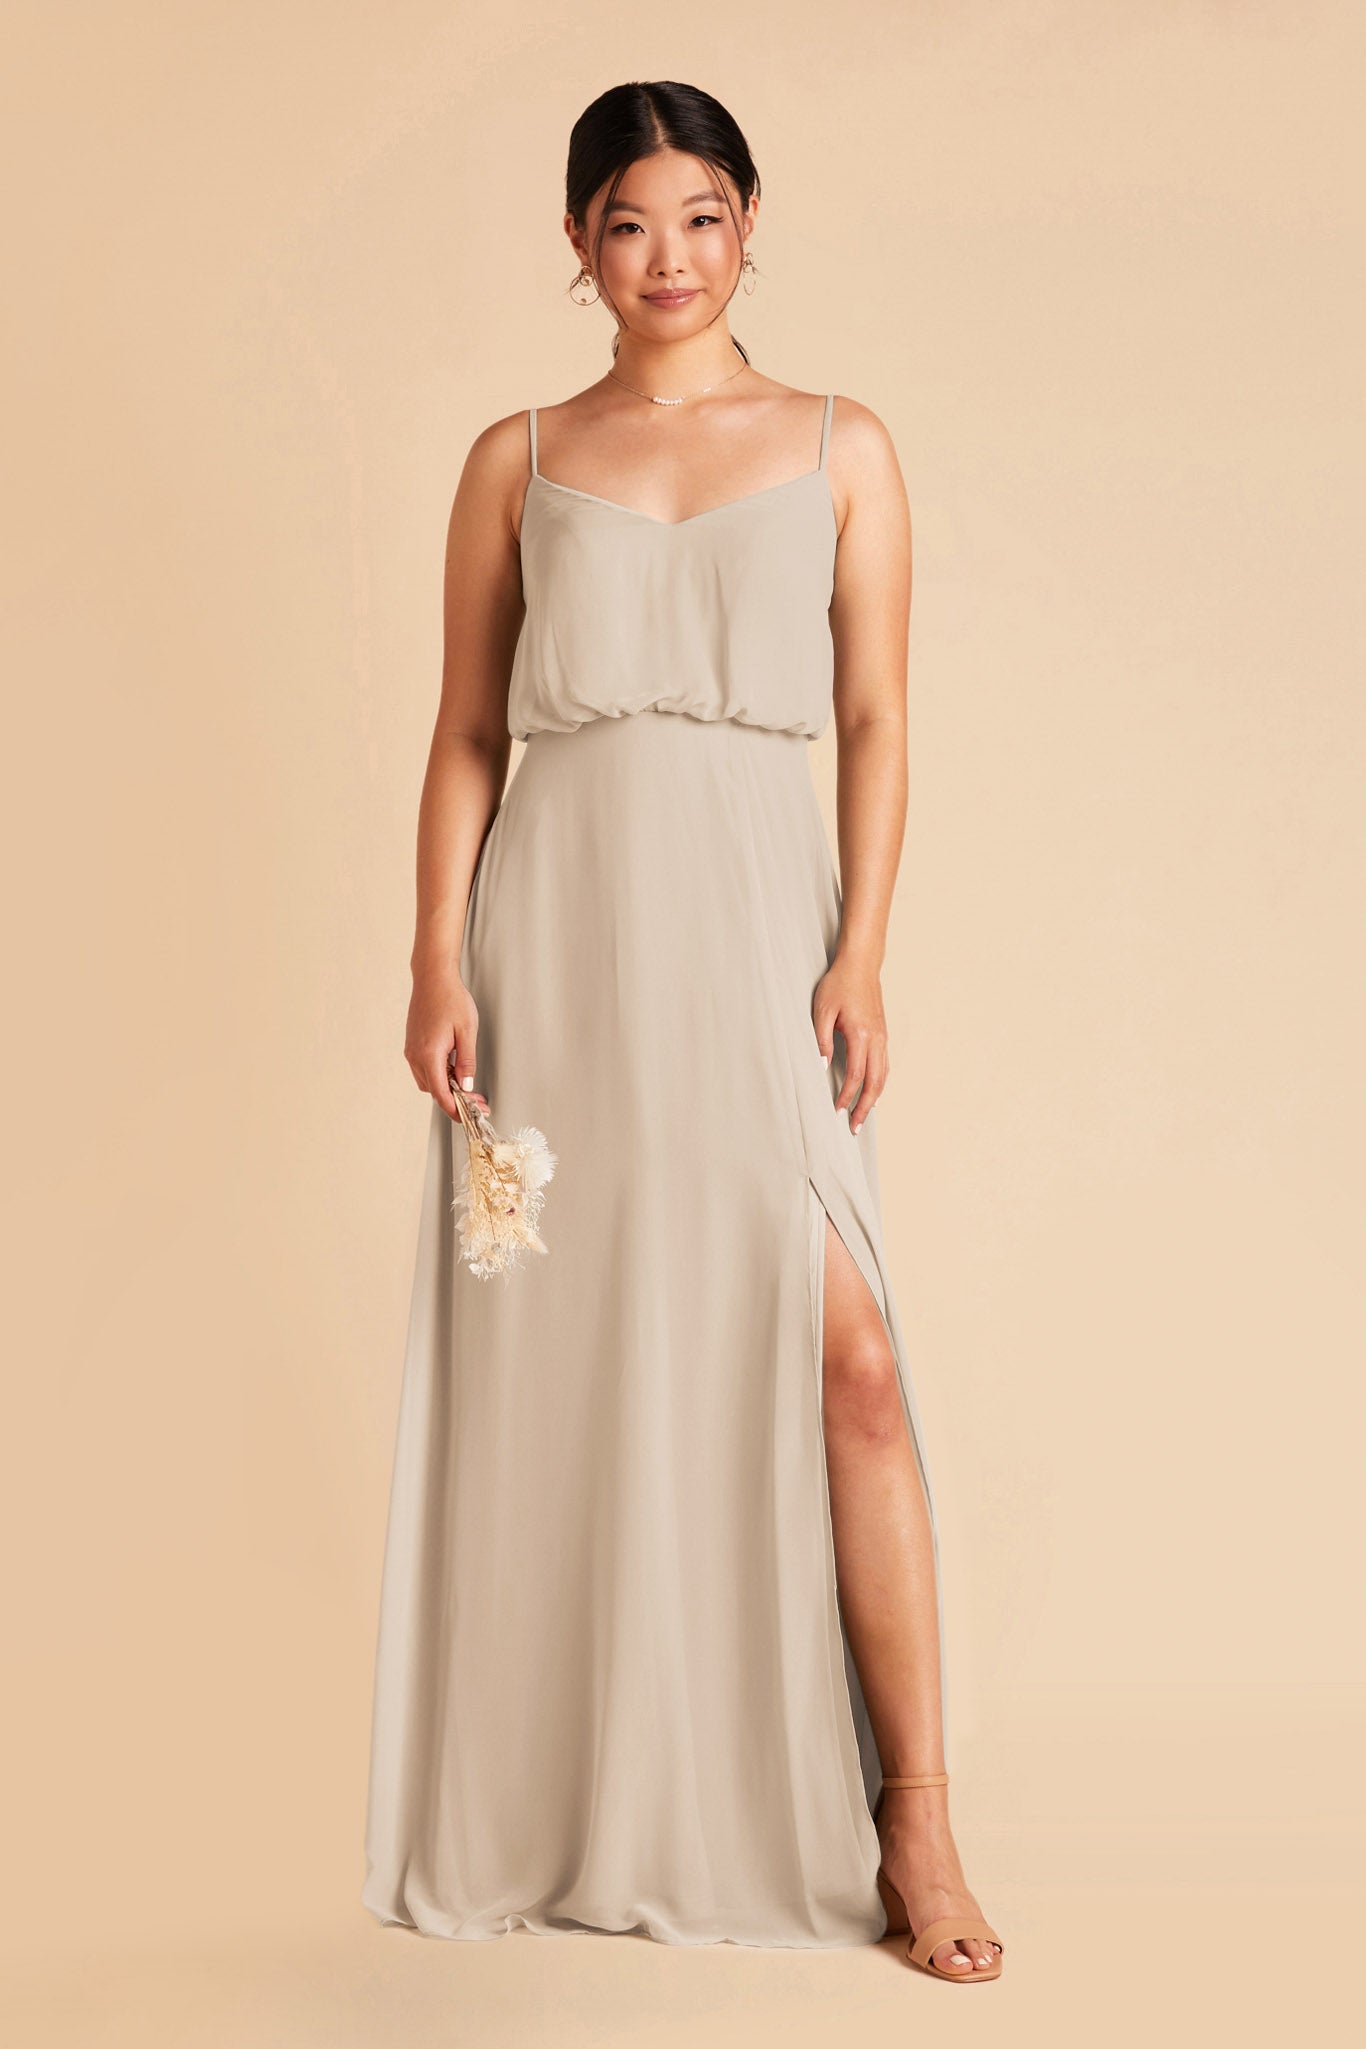 Neutral Champagne Gwennie Dress by Birdy Grey